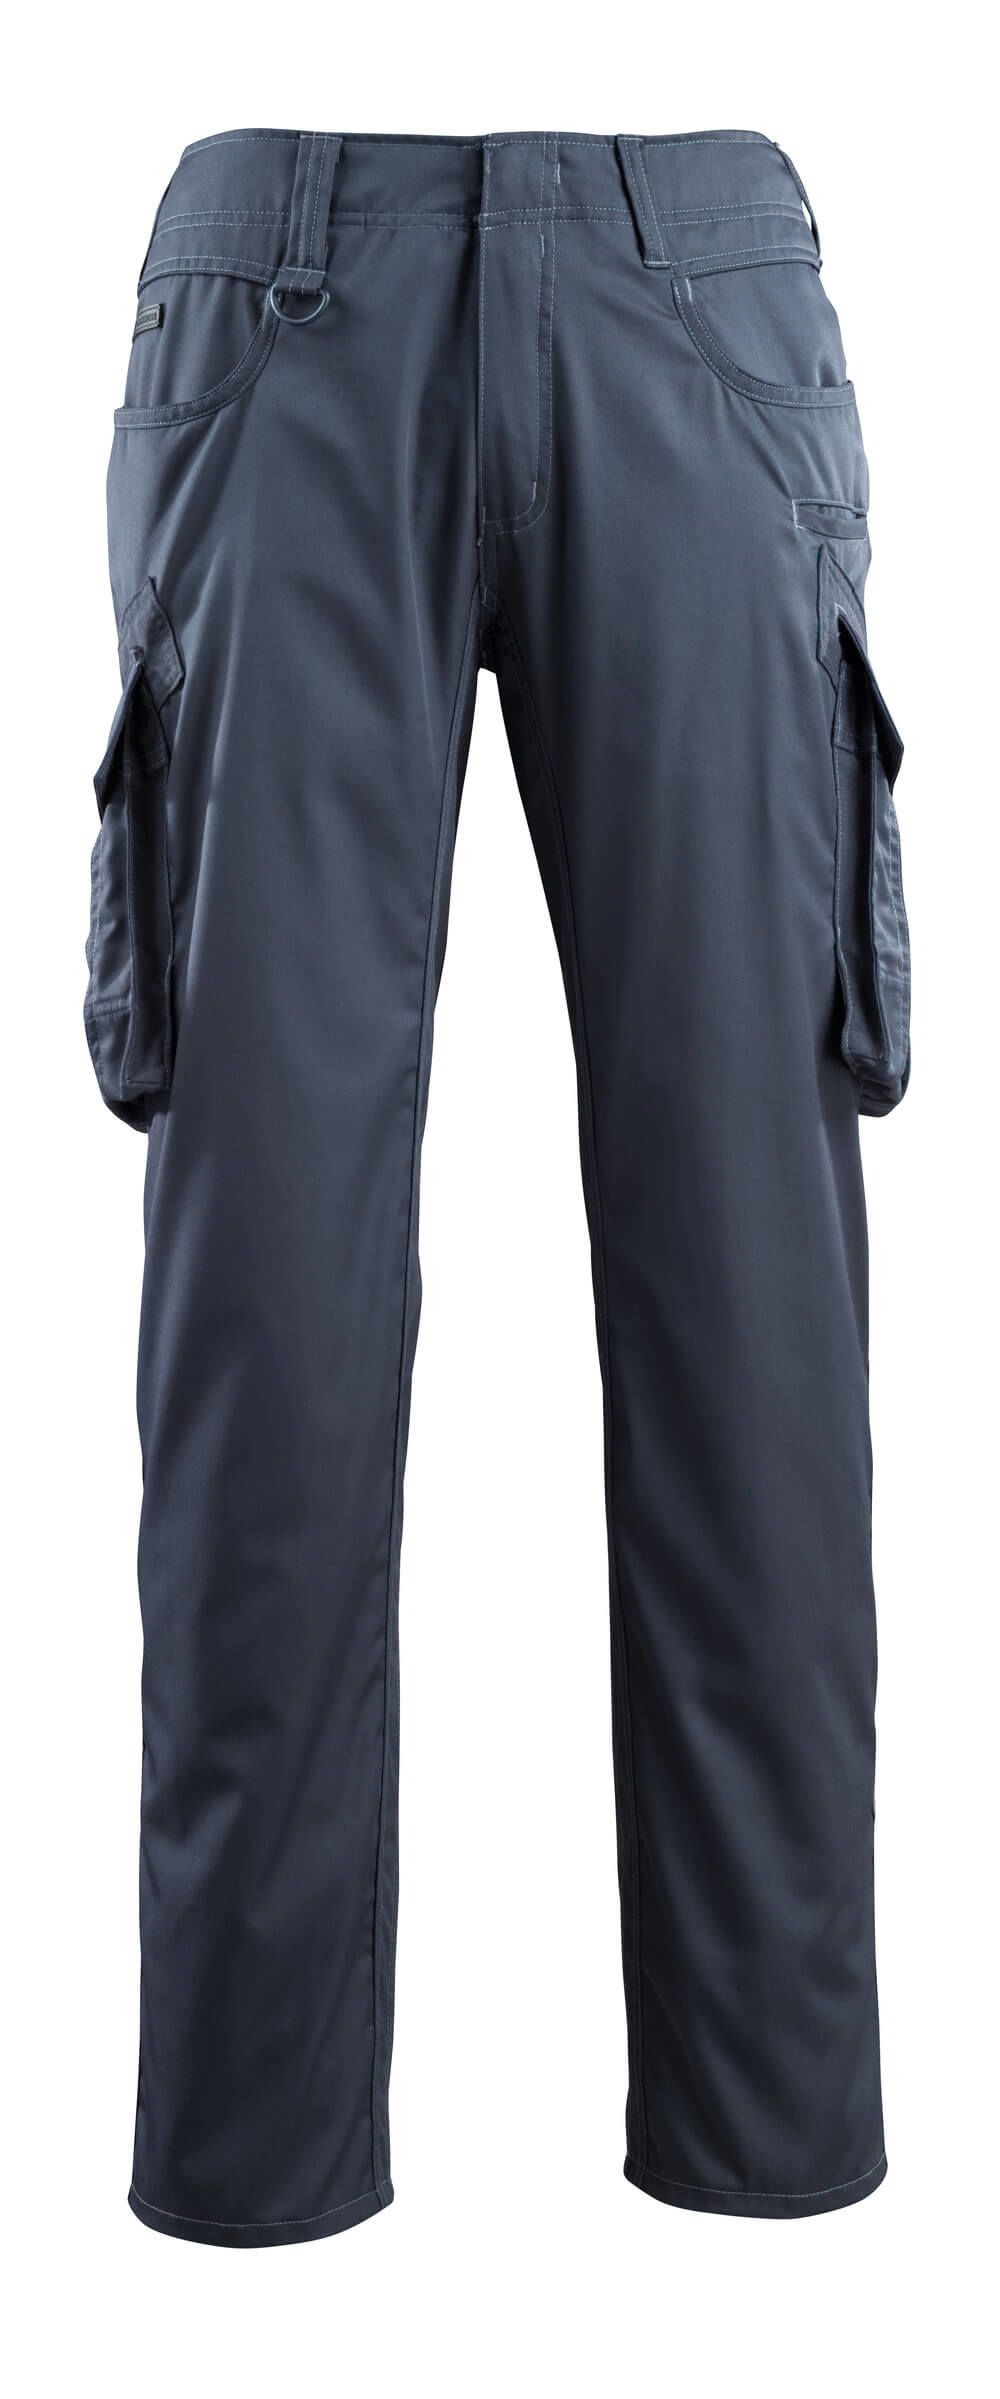 Mascot Workwear INGOLSTADT Dark Navy Unisex's Cotton, Polyester Trousers 37in, 46 Waist